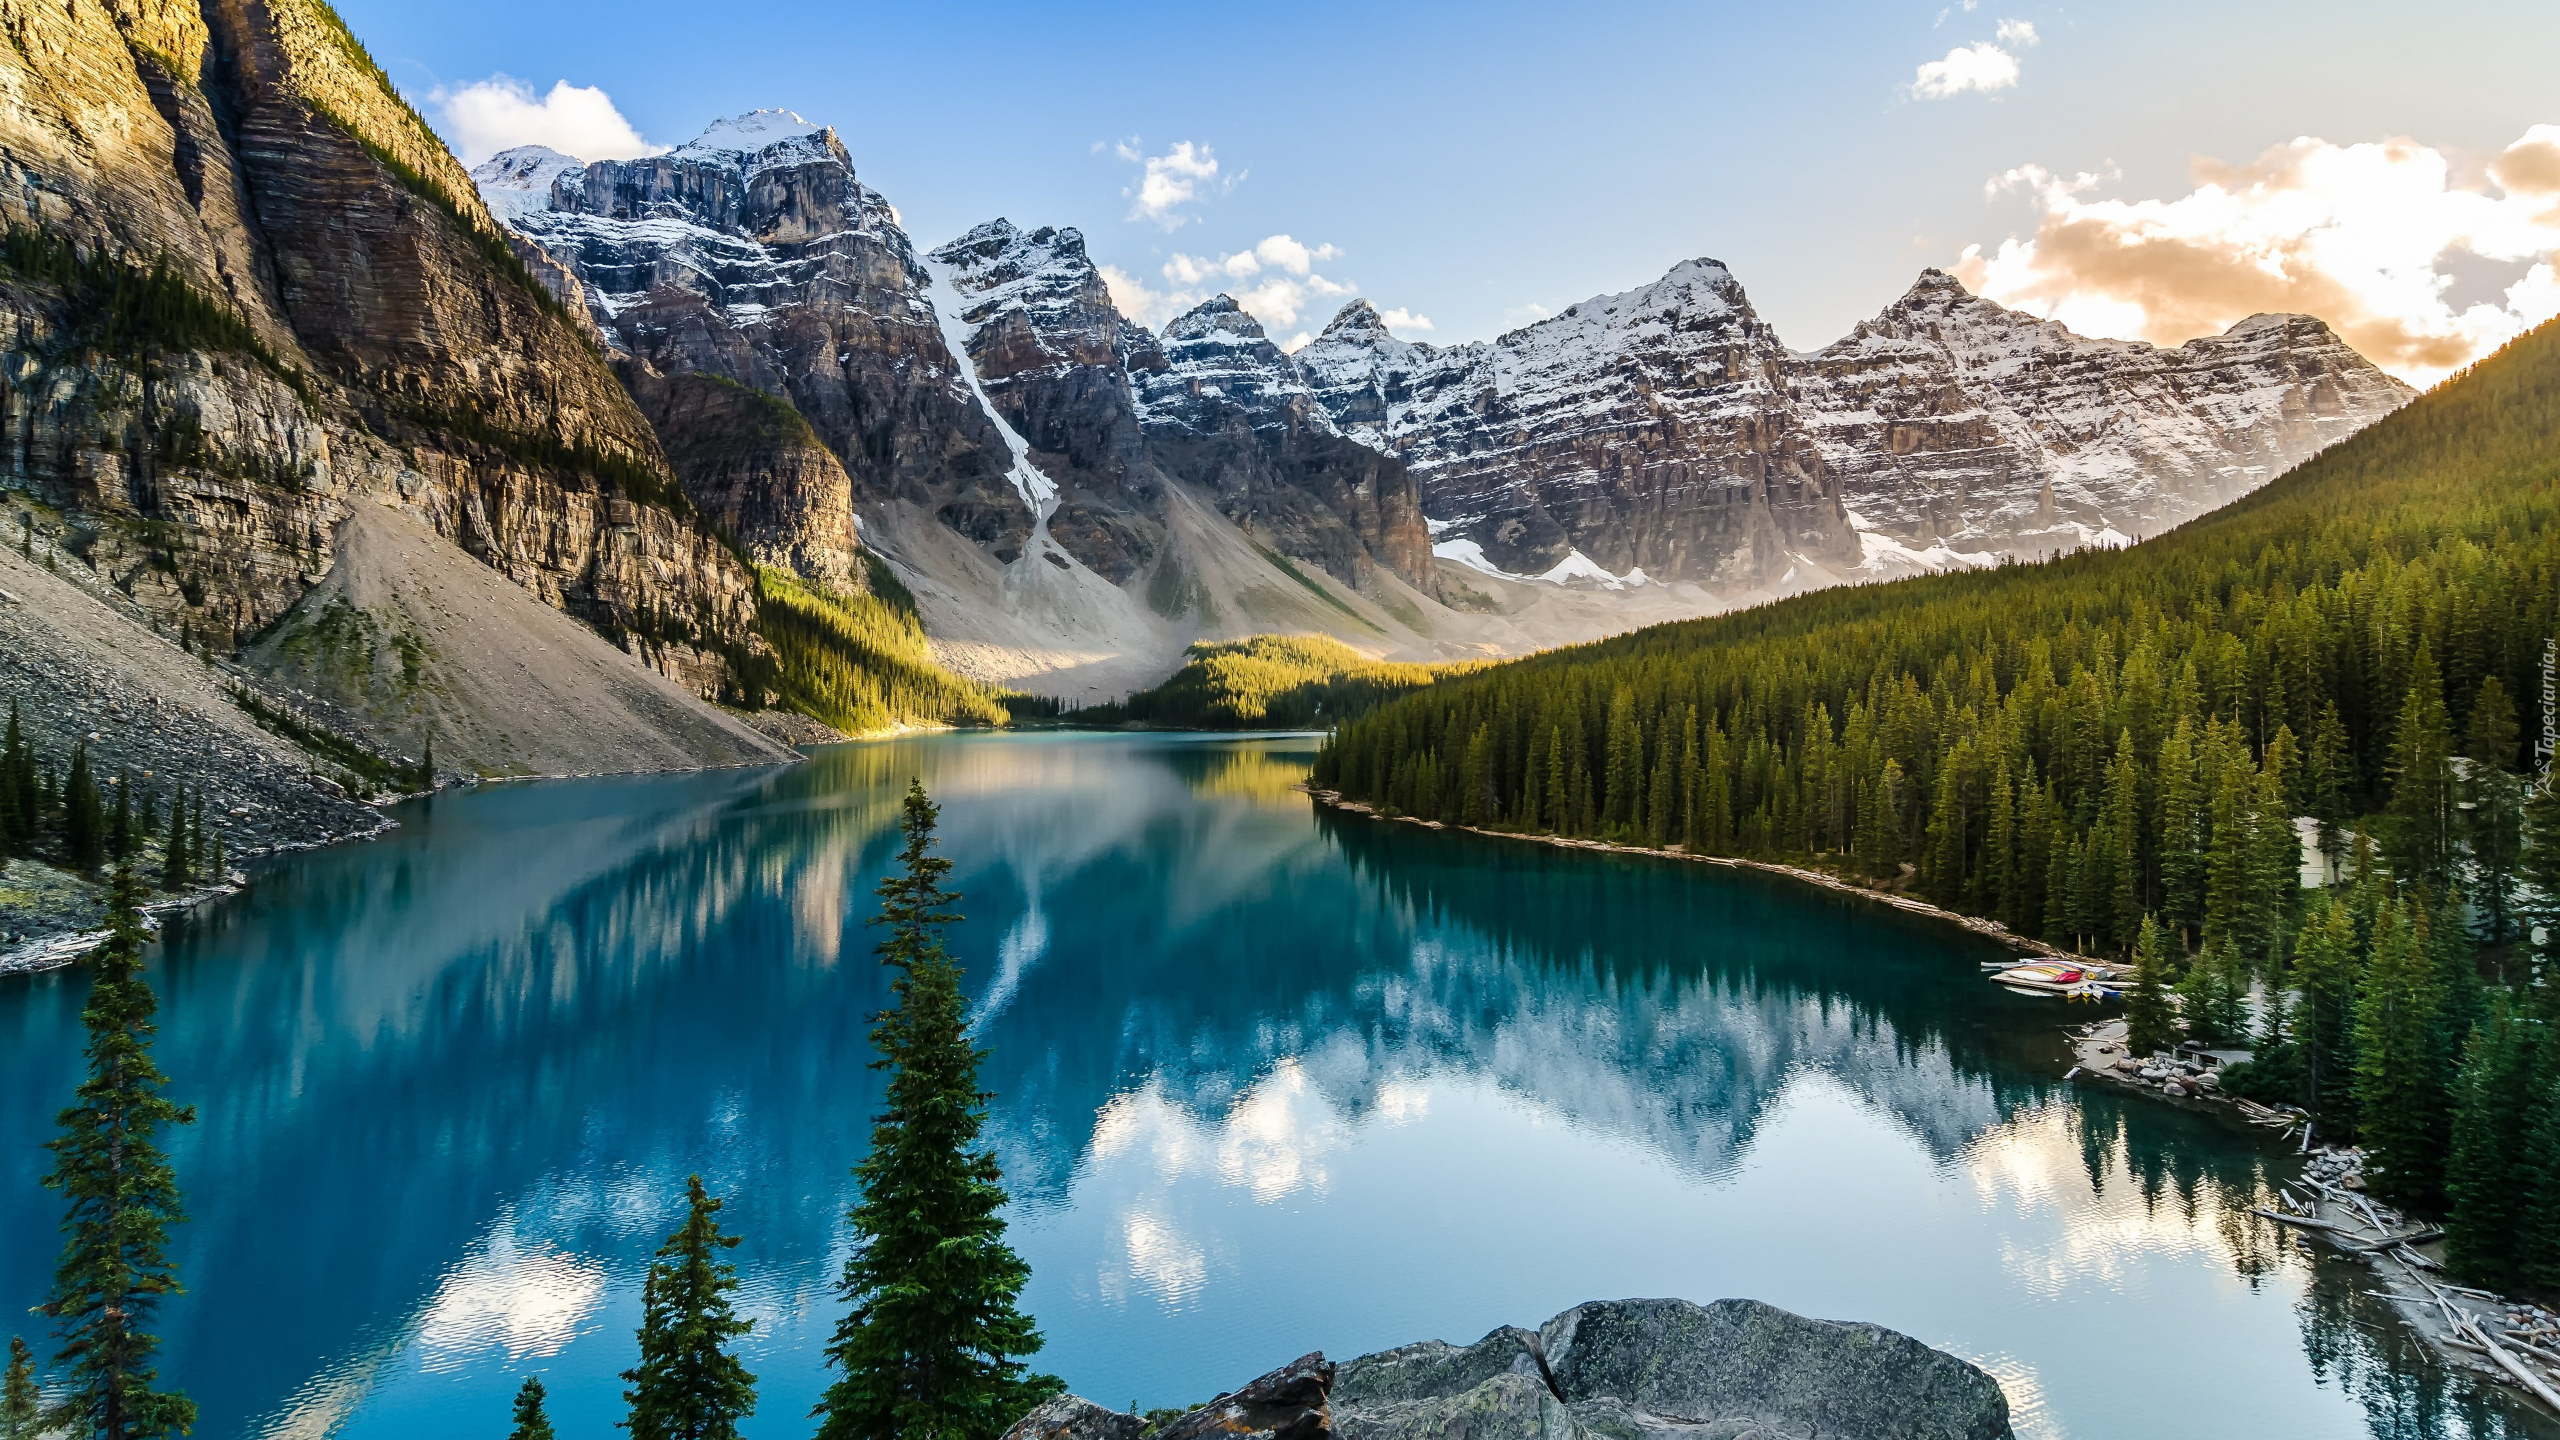 Kanada, Alberta, Park Narodowy Banff, Jezioro Moraine, Dolina Dziesięciu Szczytów, Las, Drzewa, Góry, Odbicie